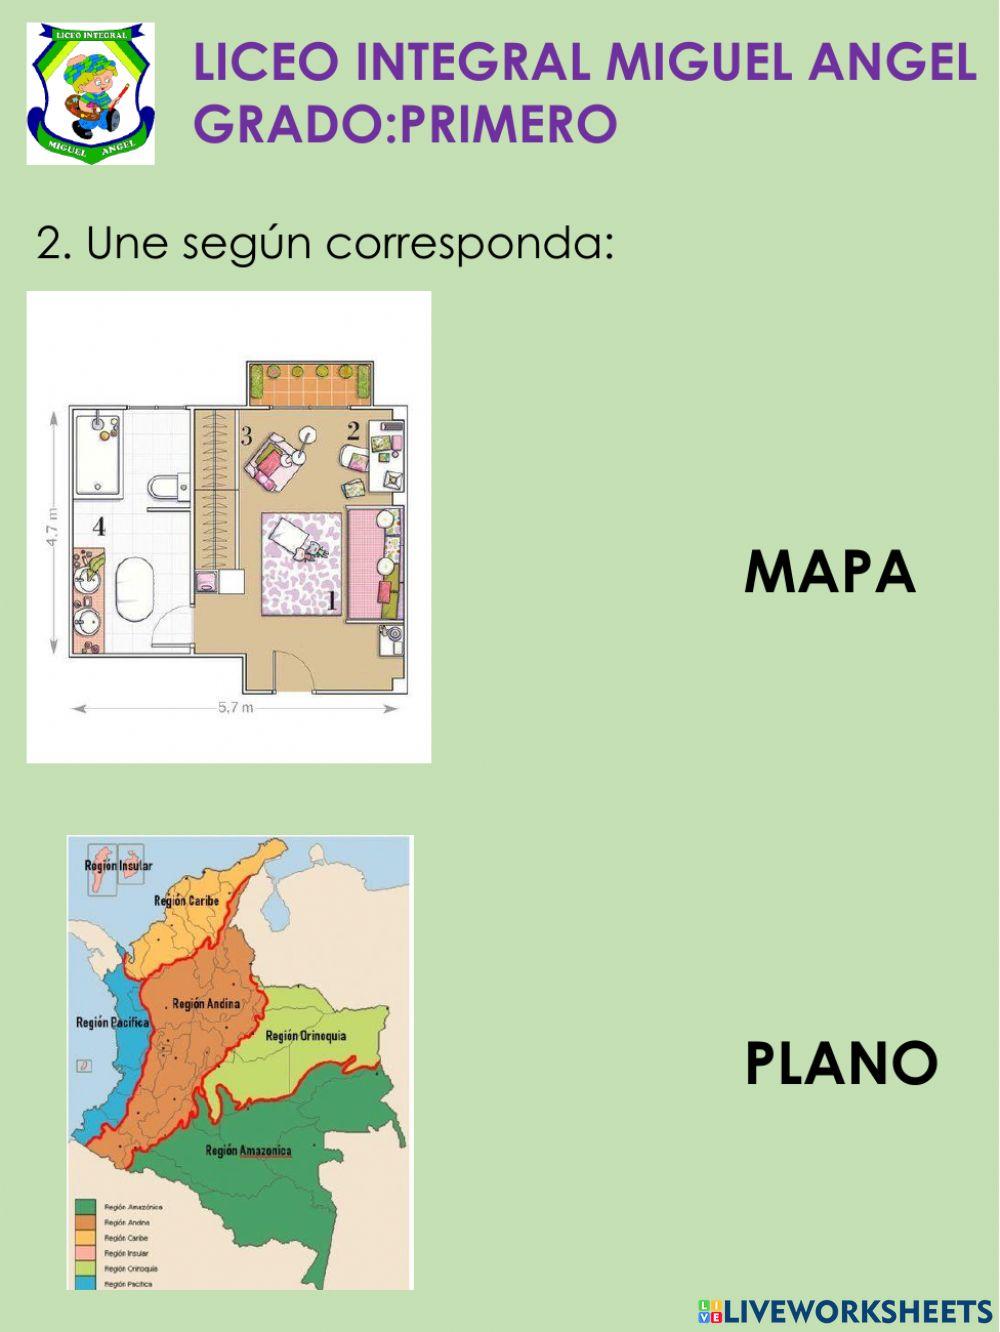 Mapas y planos